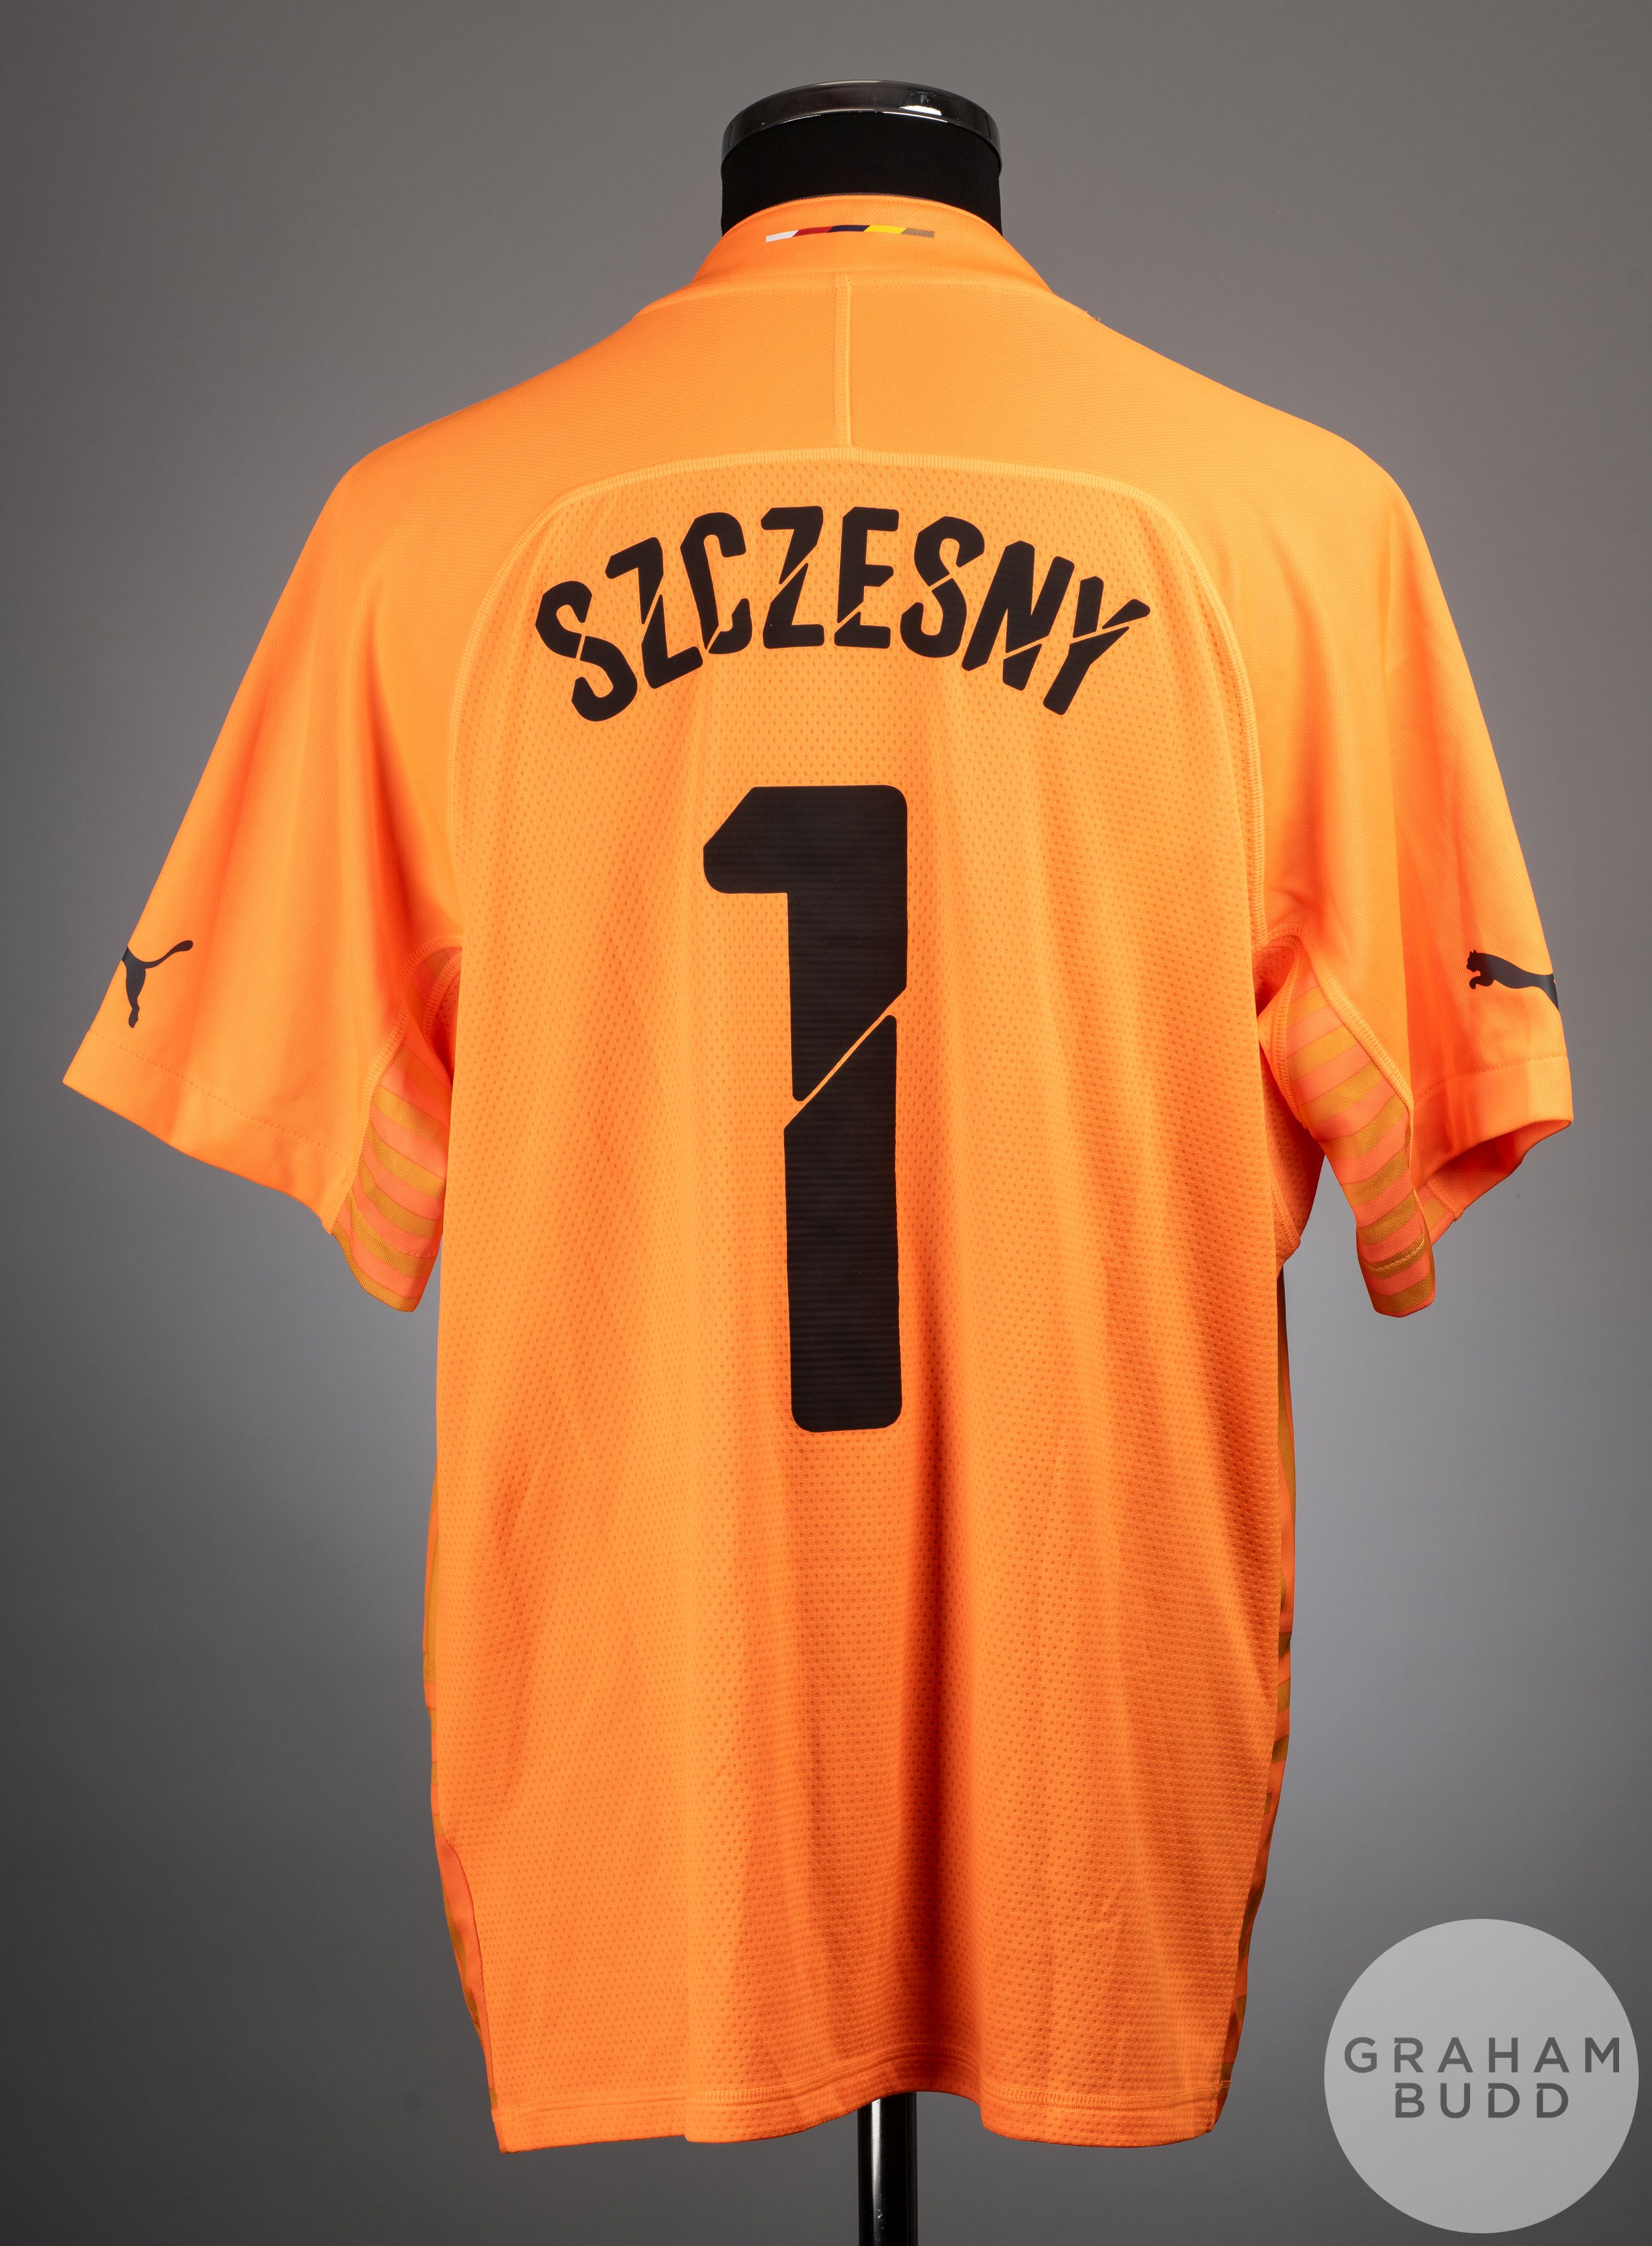 Wojciech Szczesny orange No.1 Arsenal v. Manchester United match worn shirt, 2014-15 - Image 2 of 2